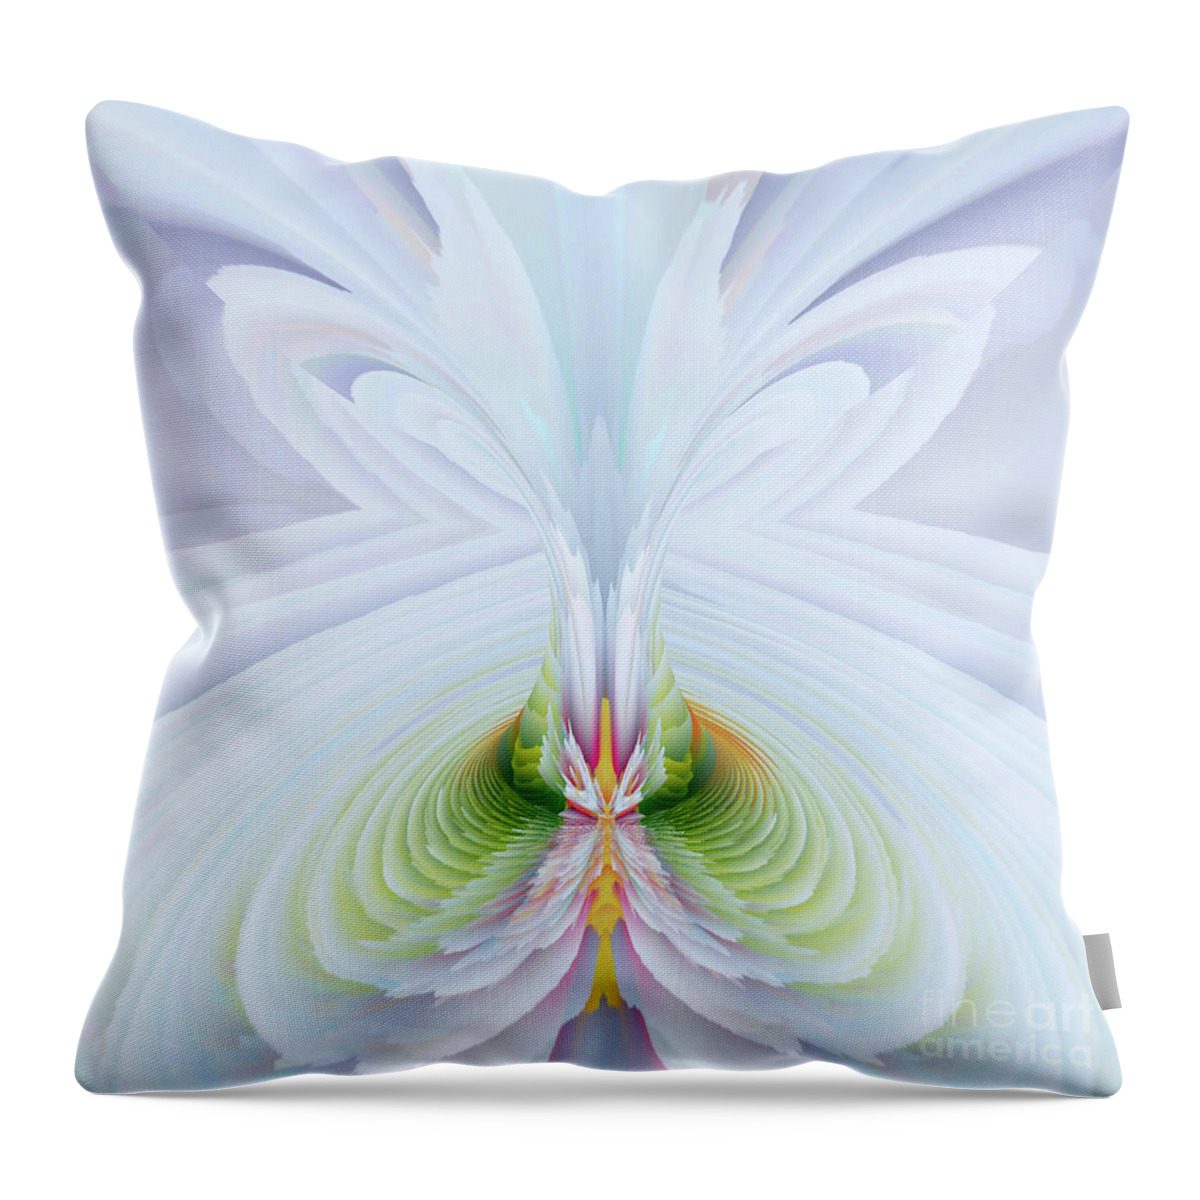 Art Throw Pillow featuring the digital art Seies Sun 3 by Alexandra Vusir